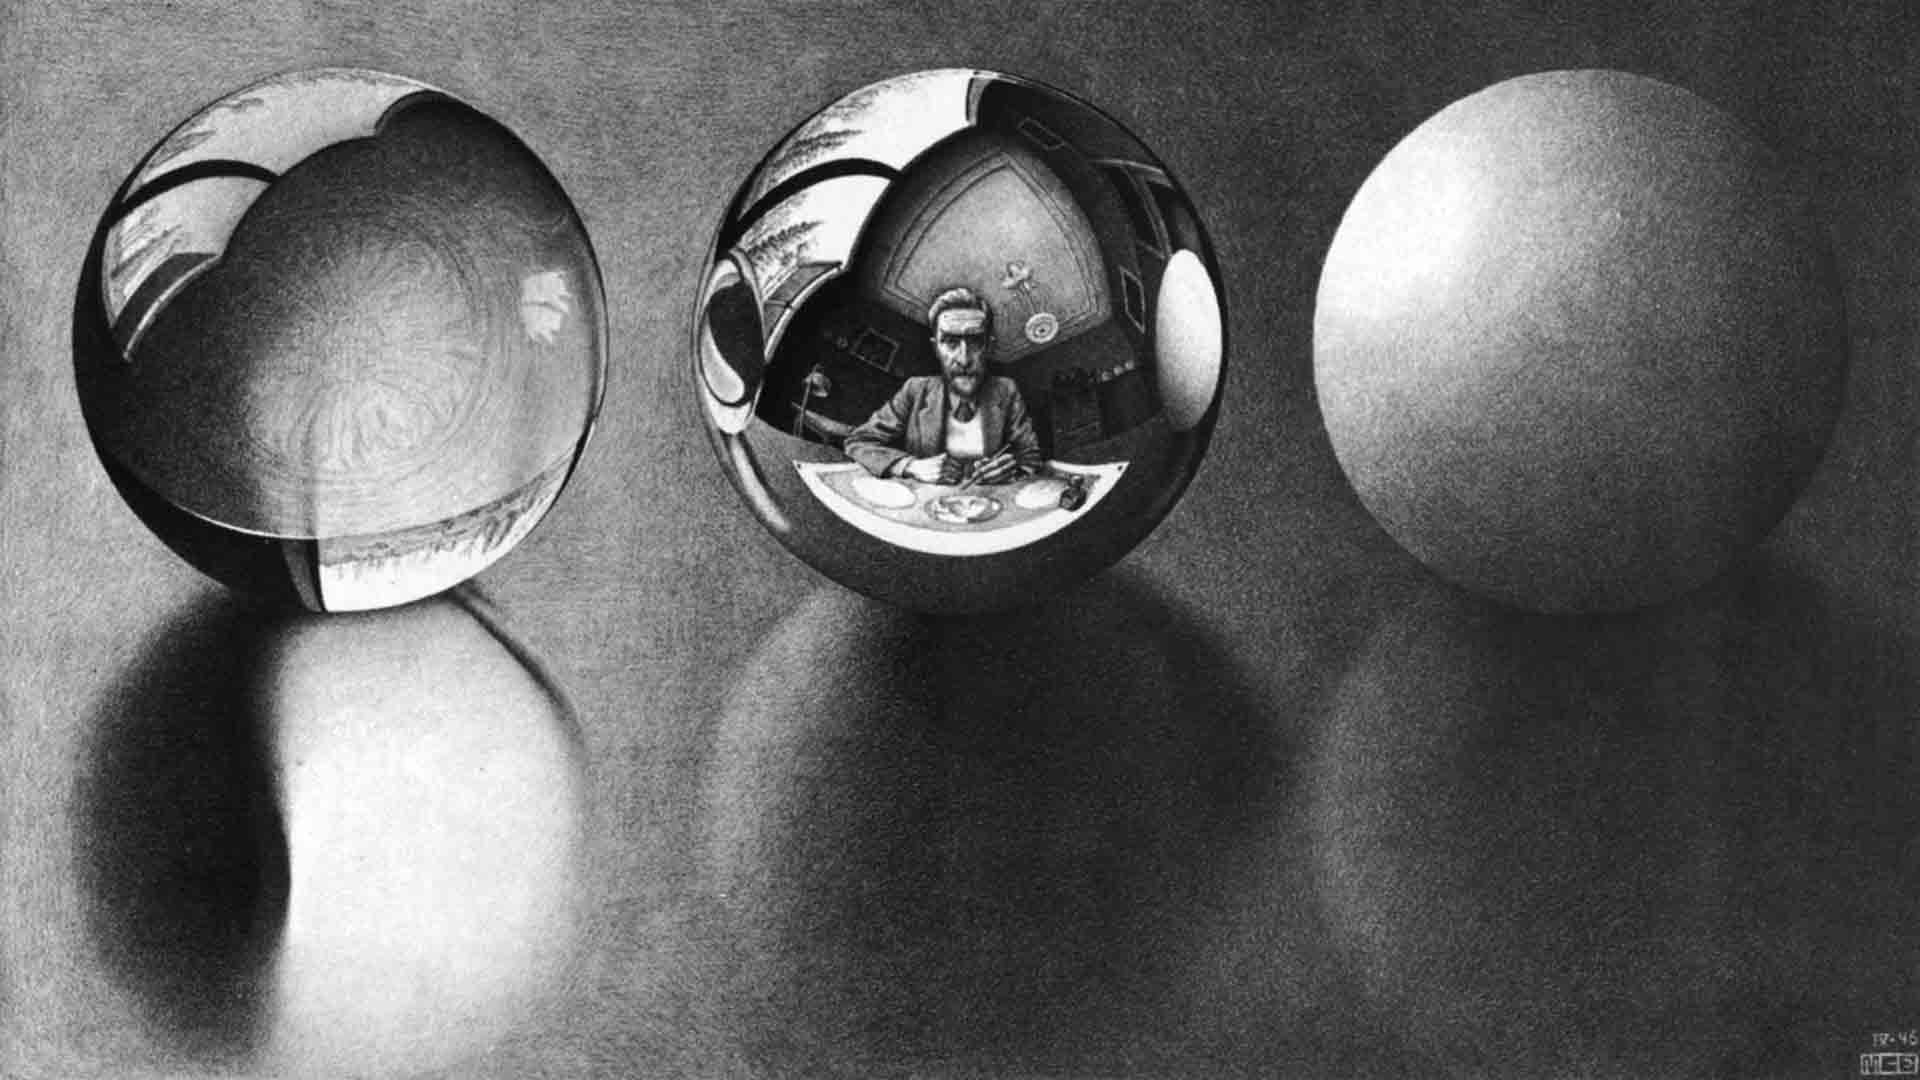 M. C. Escher's Three Spheres II at https://www.wikiart.org/en/m-c-escher (CC0 1.0)